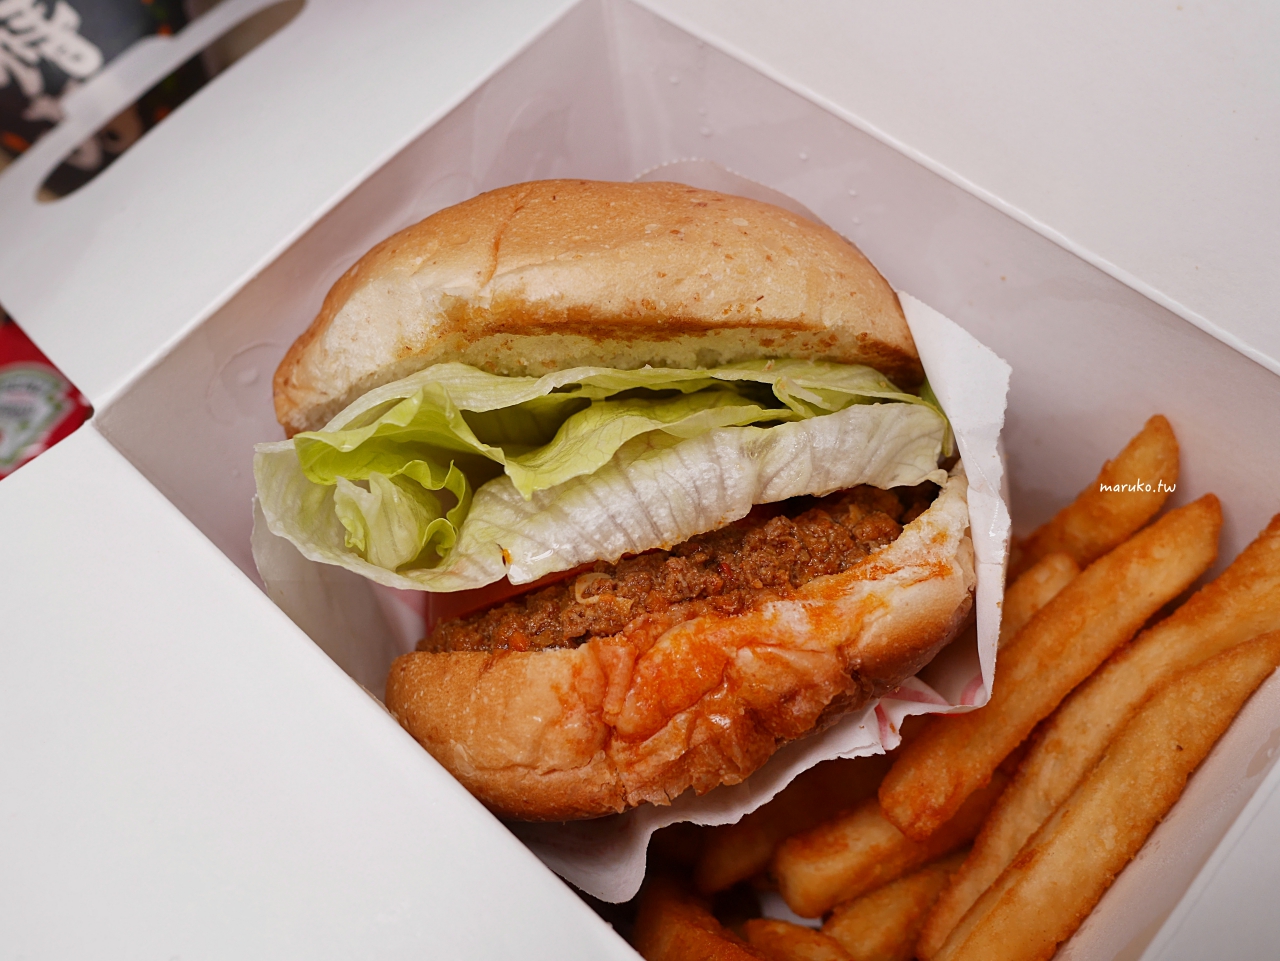 【台北】樂檸漢堡 來自嘉義美味漢堡 穿短褲消費套餐免費升級 @Maruko與美食有個約會